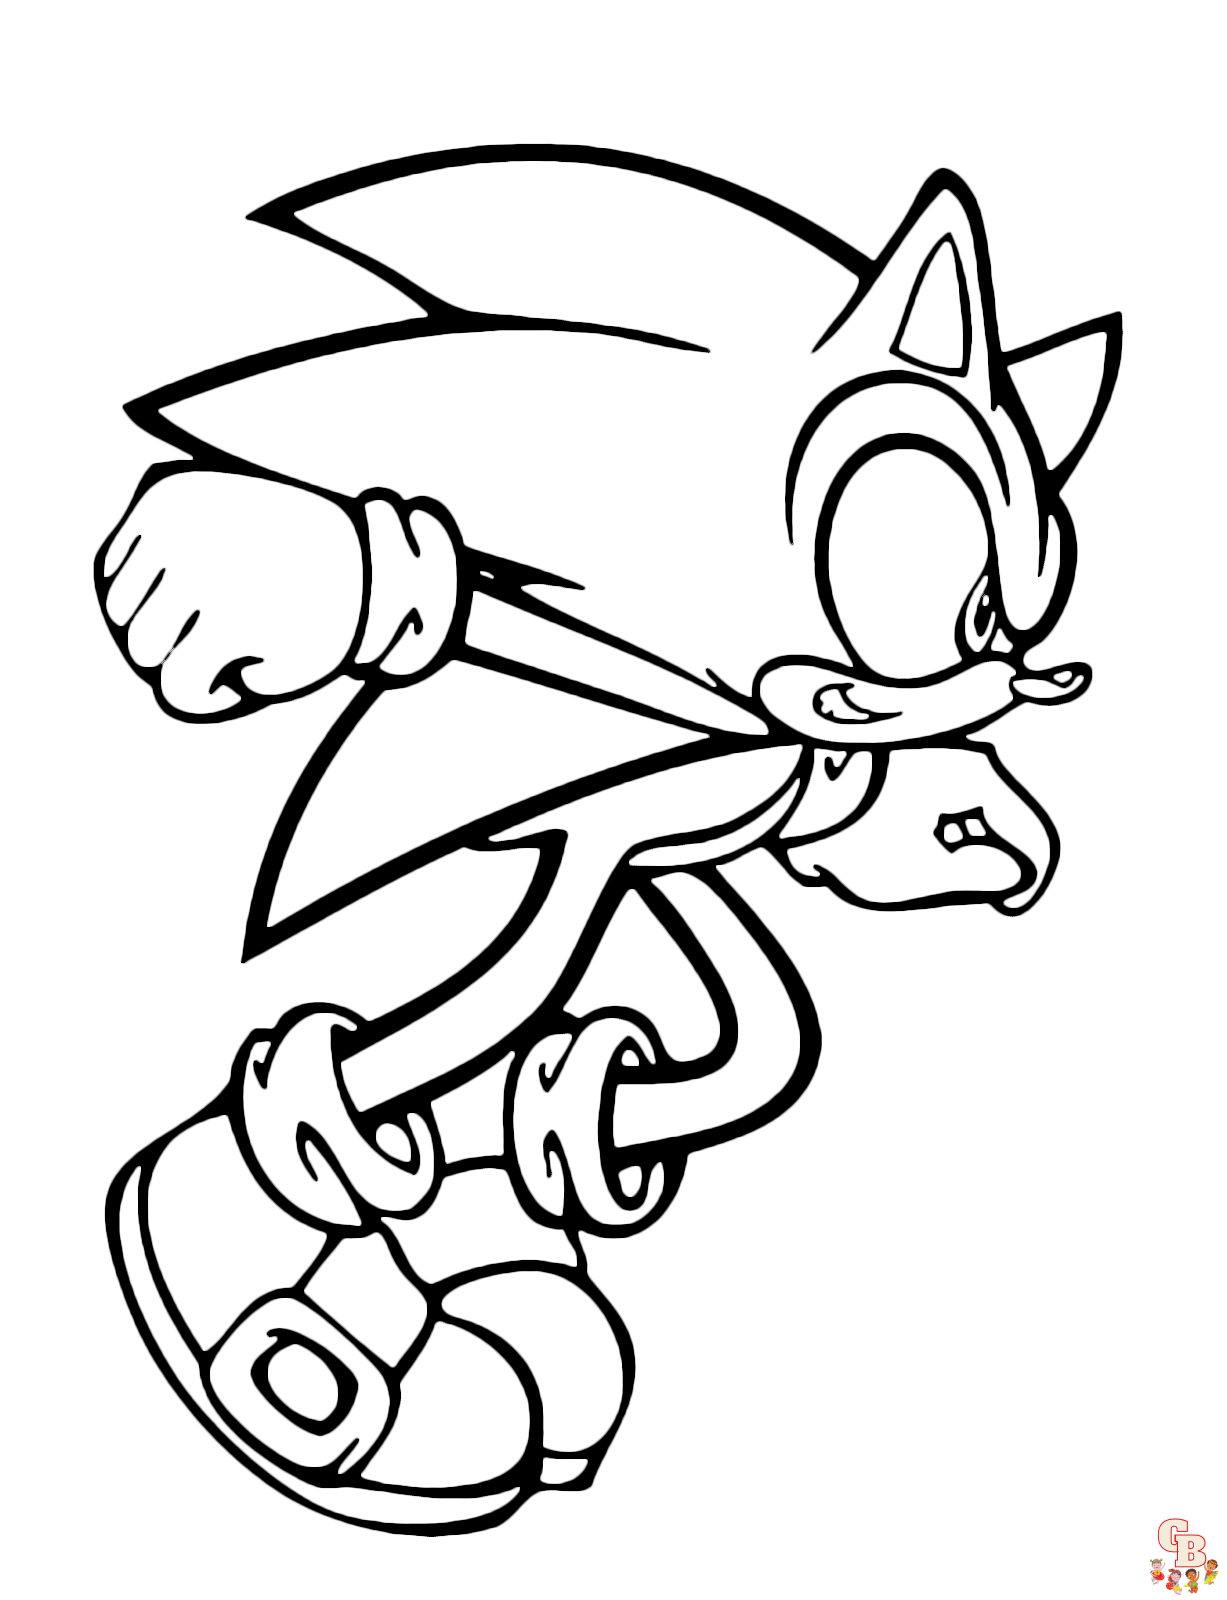 Sonic Boom is klaar om zijn supersonische snelheid vrij te geven